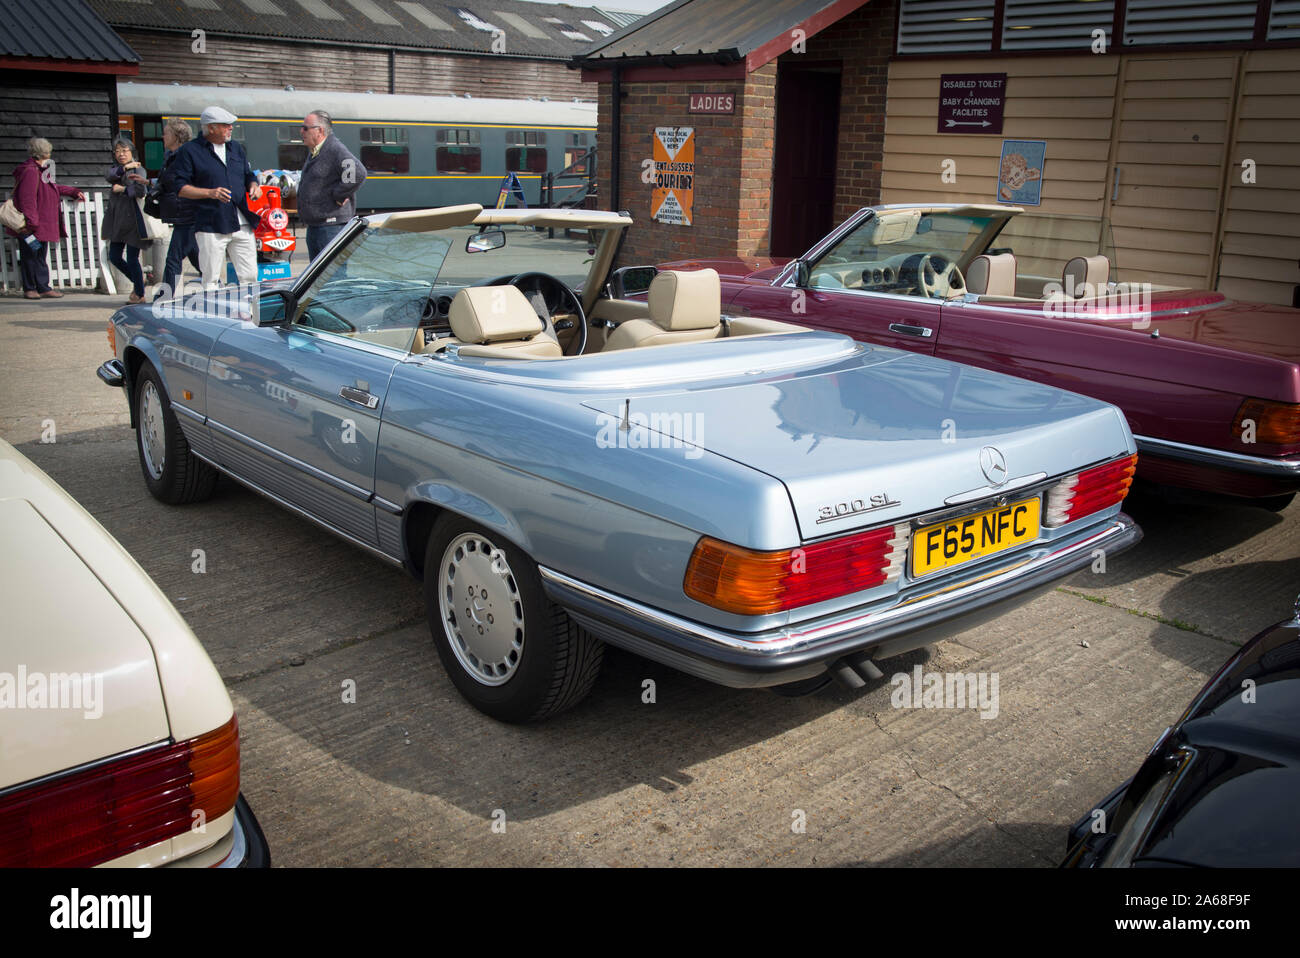 Une vieille Mercedes ouvrir-top sports salon de voiture des années 70 en prenant part à une réunion sociale à Tenterden Kent UK Banque D'Images